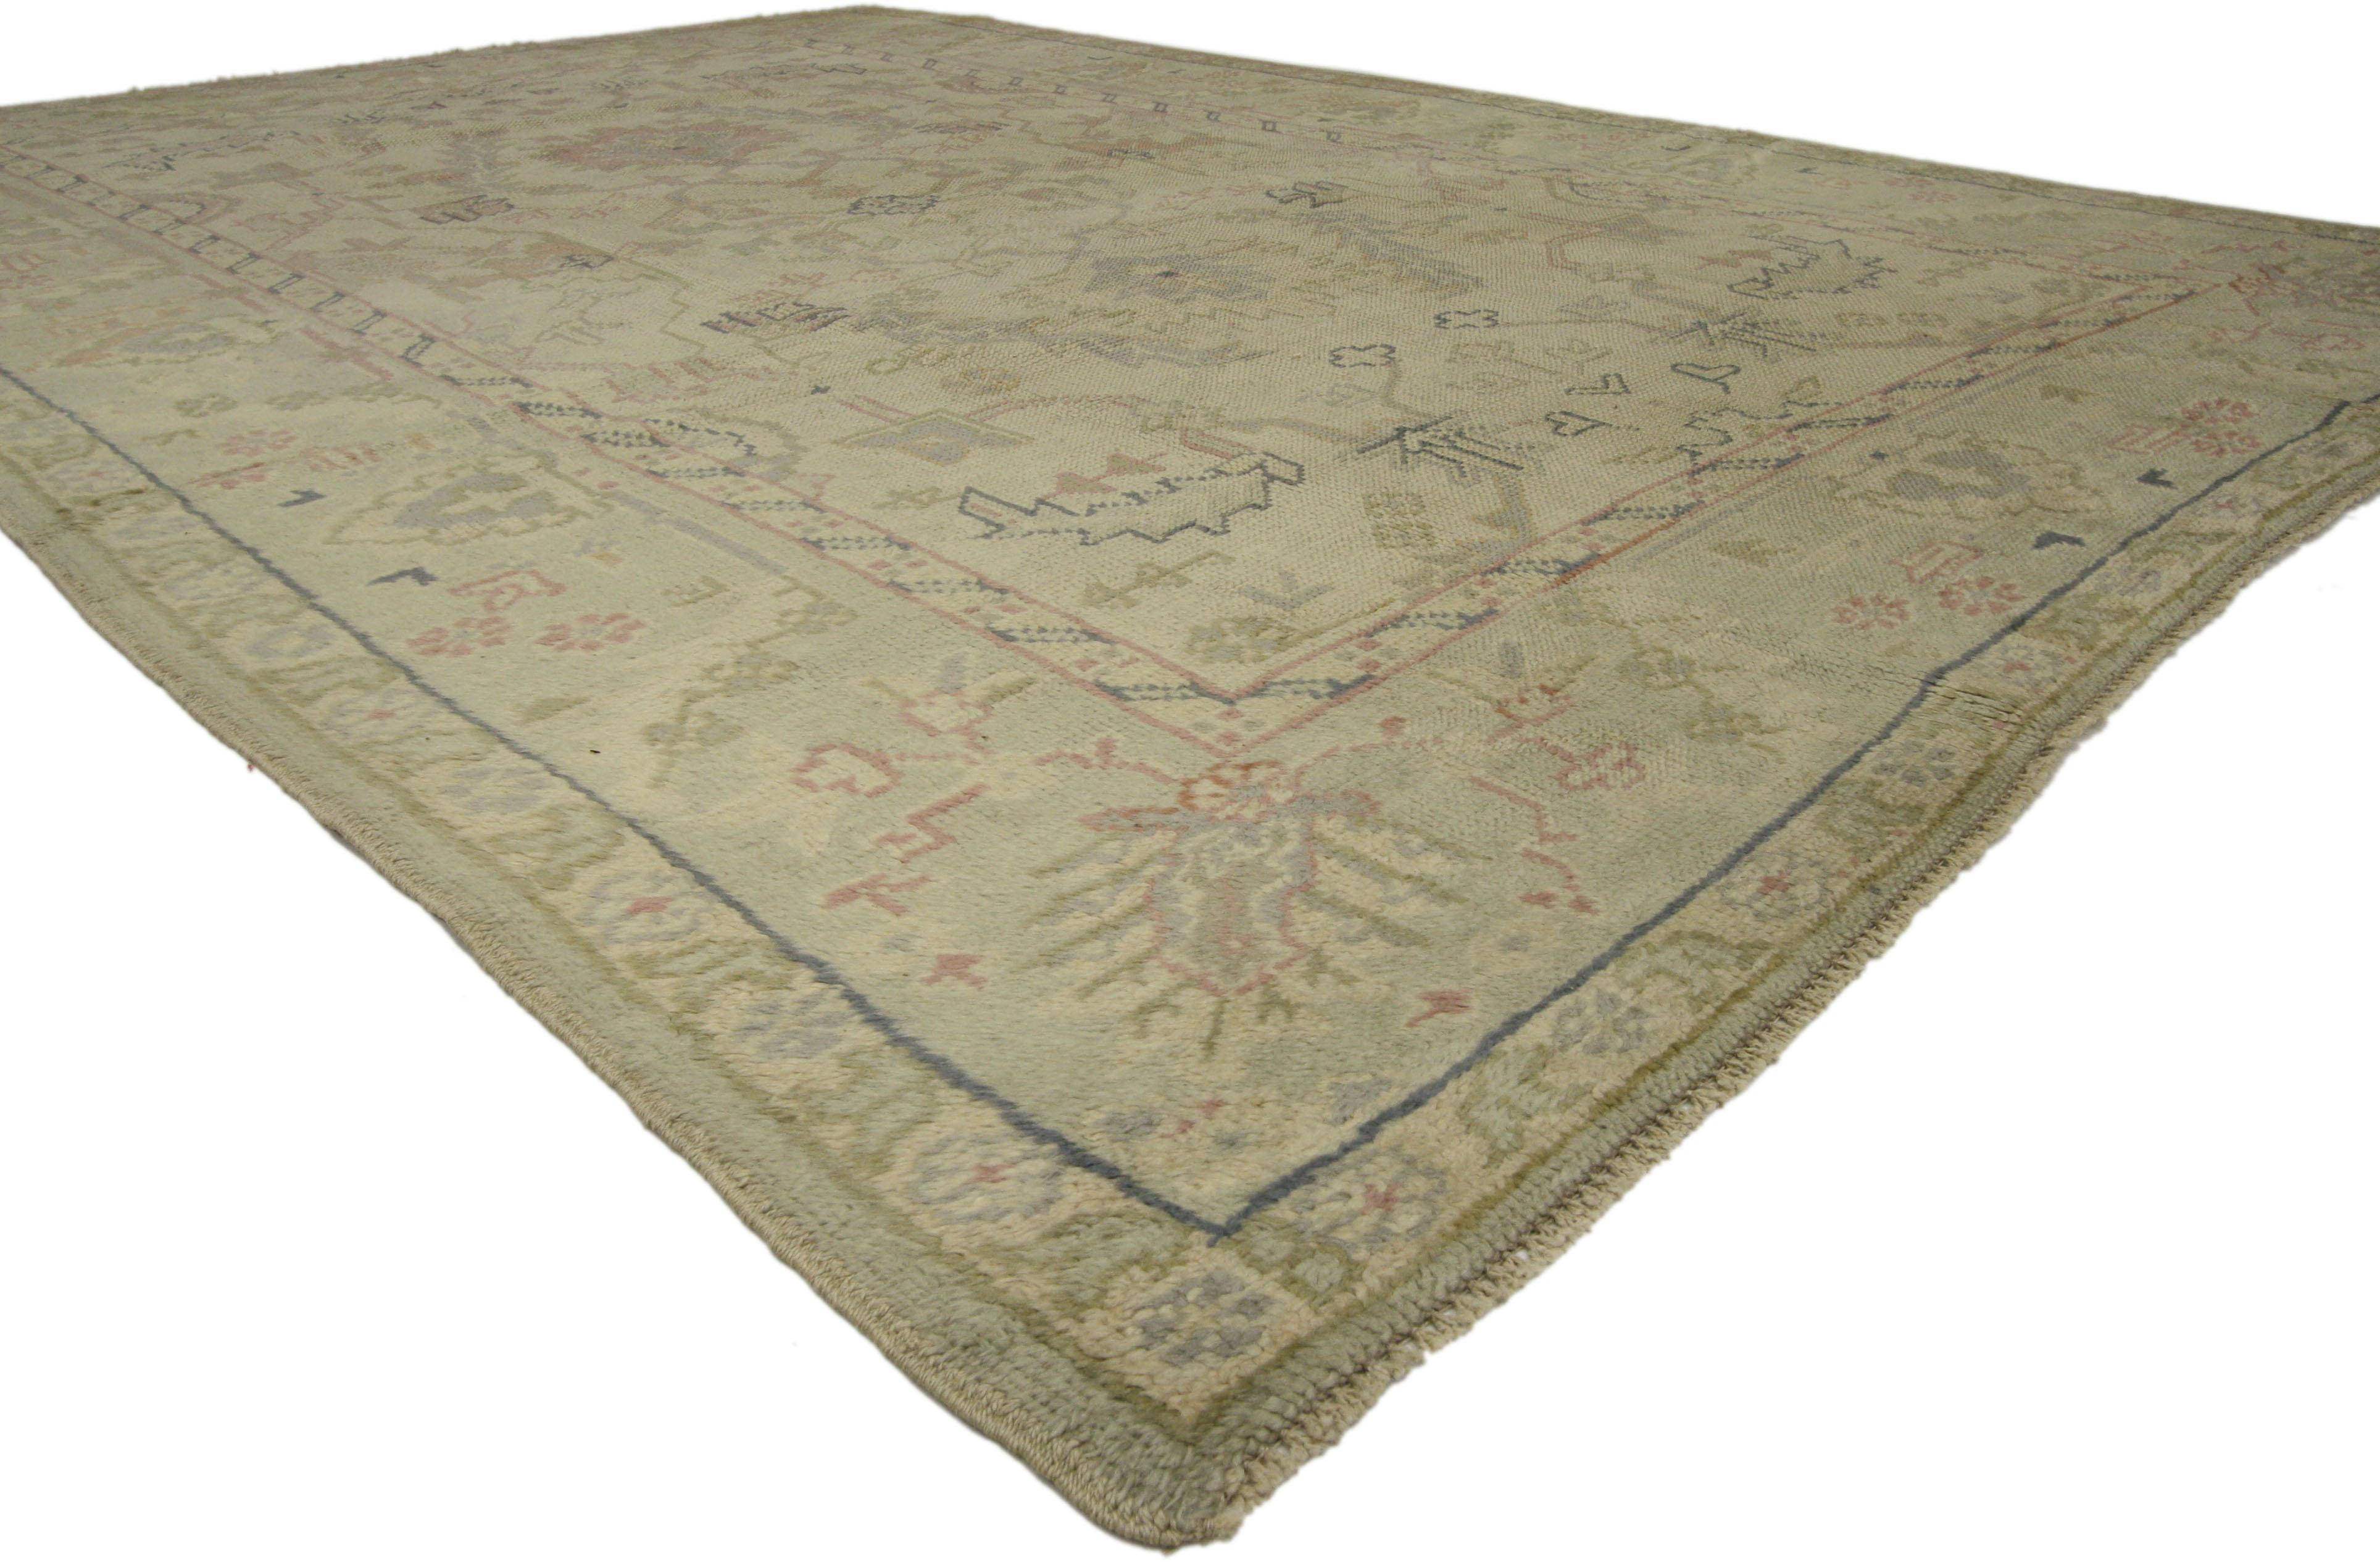 72193 Türkischer Oushak-Teppich im georgianischen Shabby-Chic-Stil. Dieser handgeknüpfte türkische Oushak-Teppich aus Wolle mit seinem zeitlosen Design und seinem liebevoll gealterten Aussehen bezaubert mit Leichtigkeit und verkörpert auf wunderbare